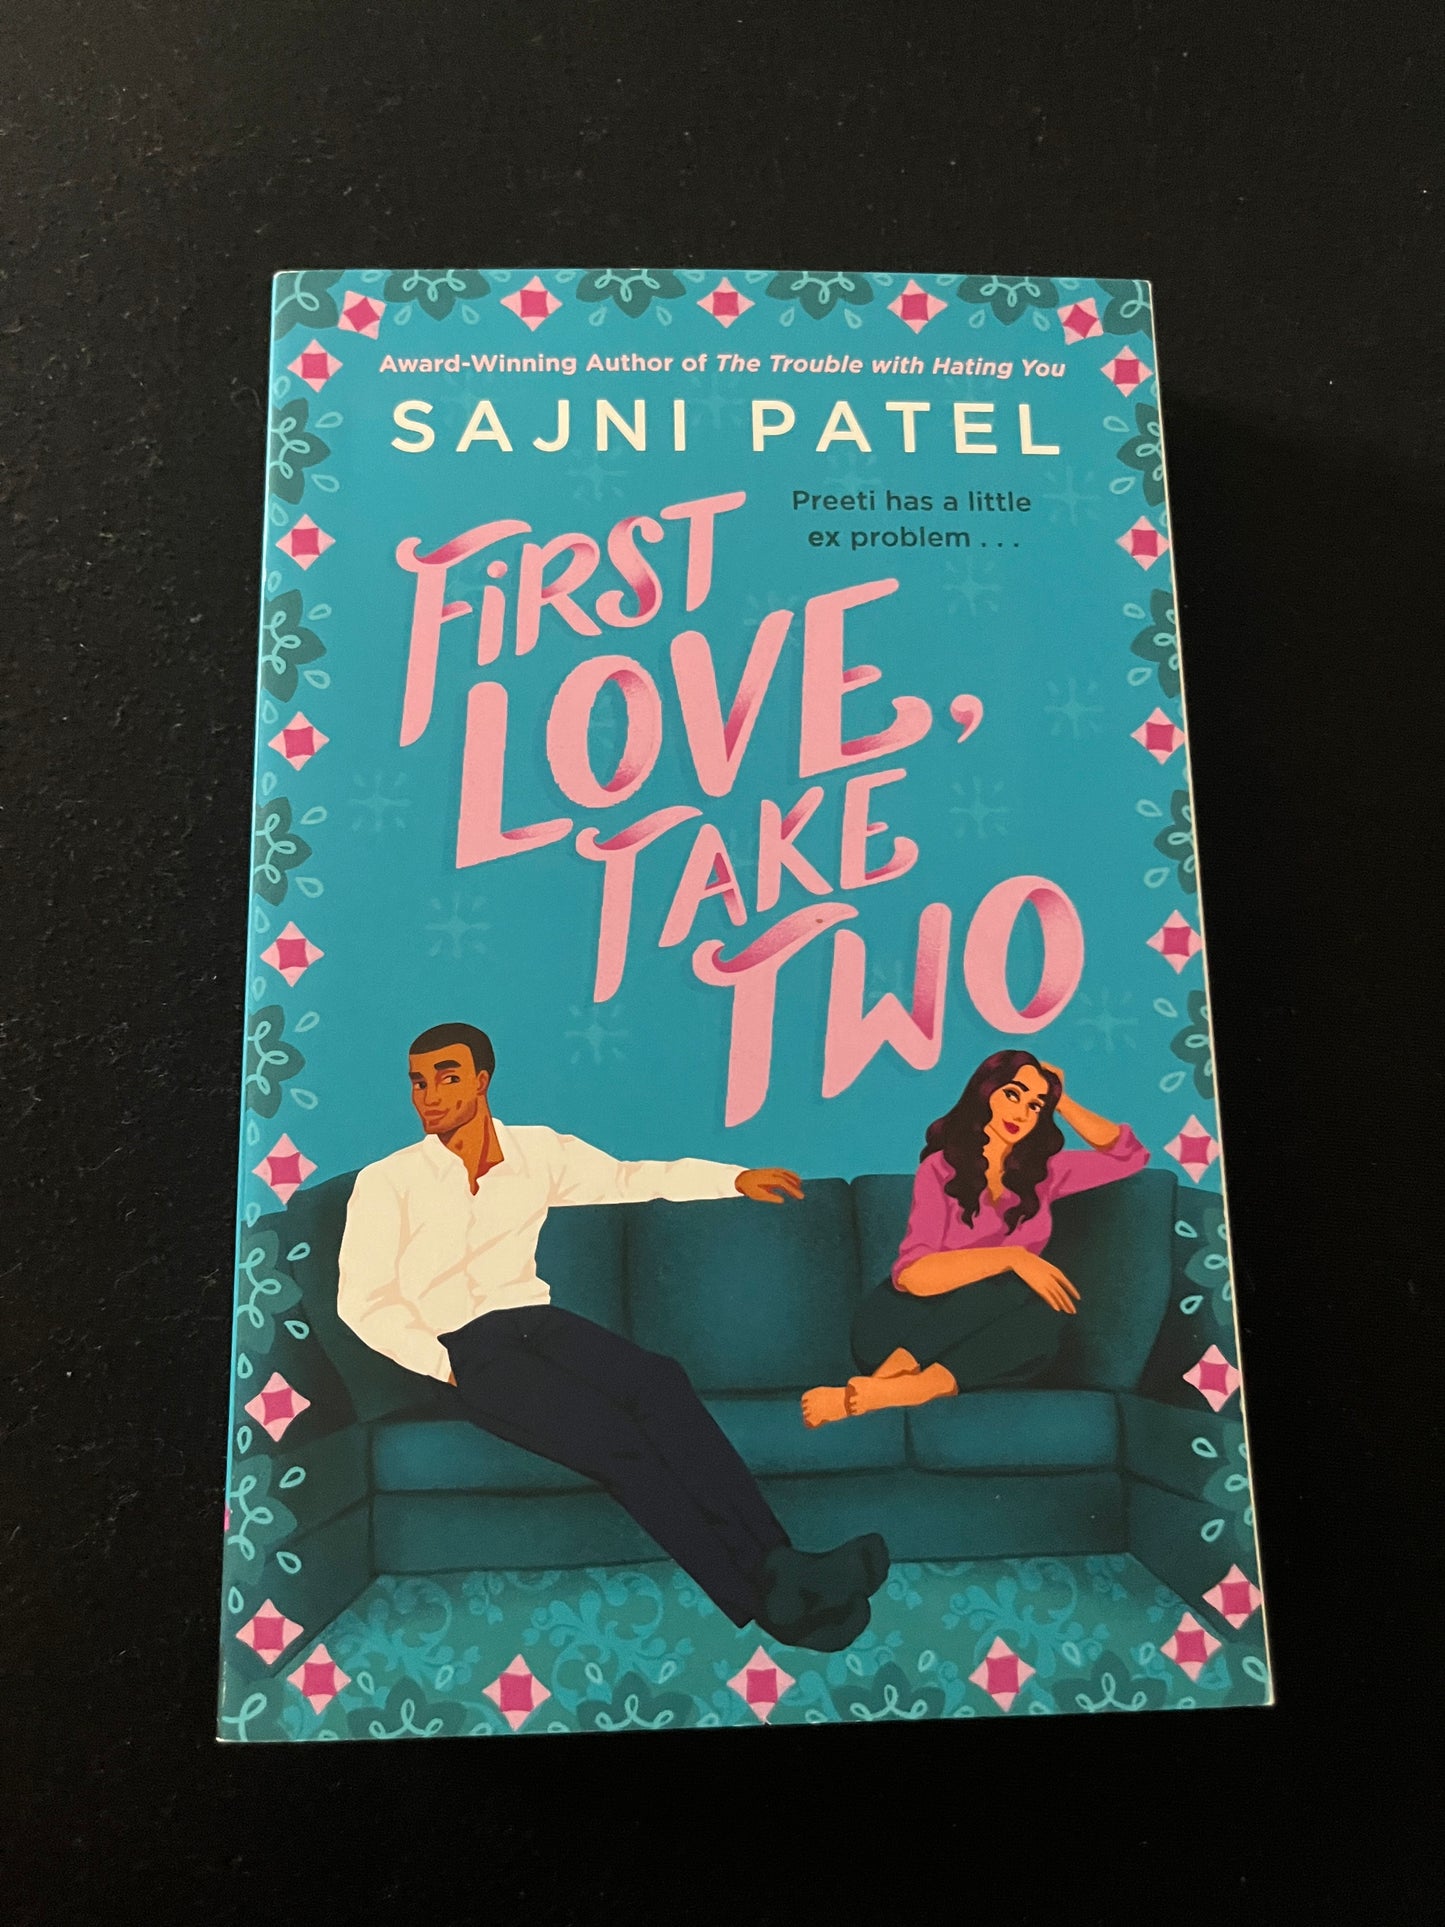 FIRST LOVE, TAKE TWO by Sajni Patel